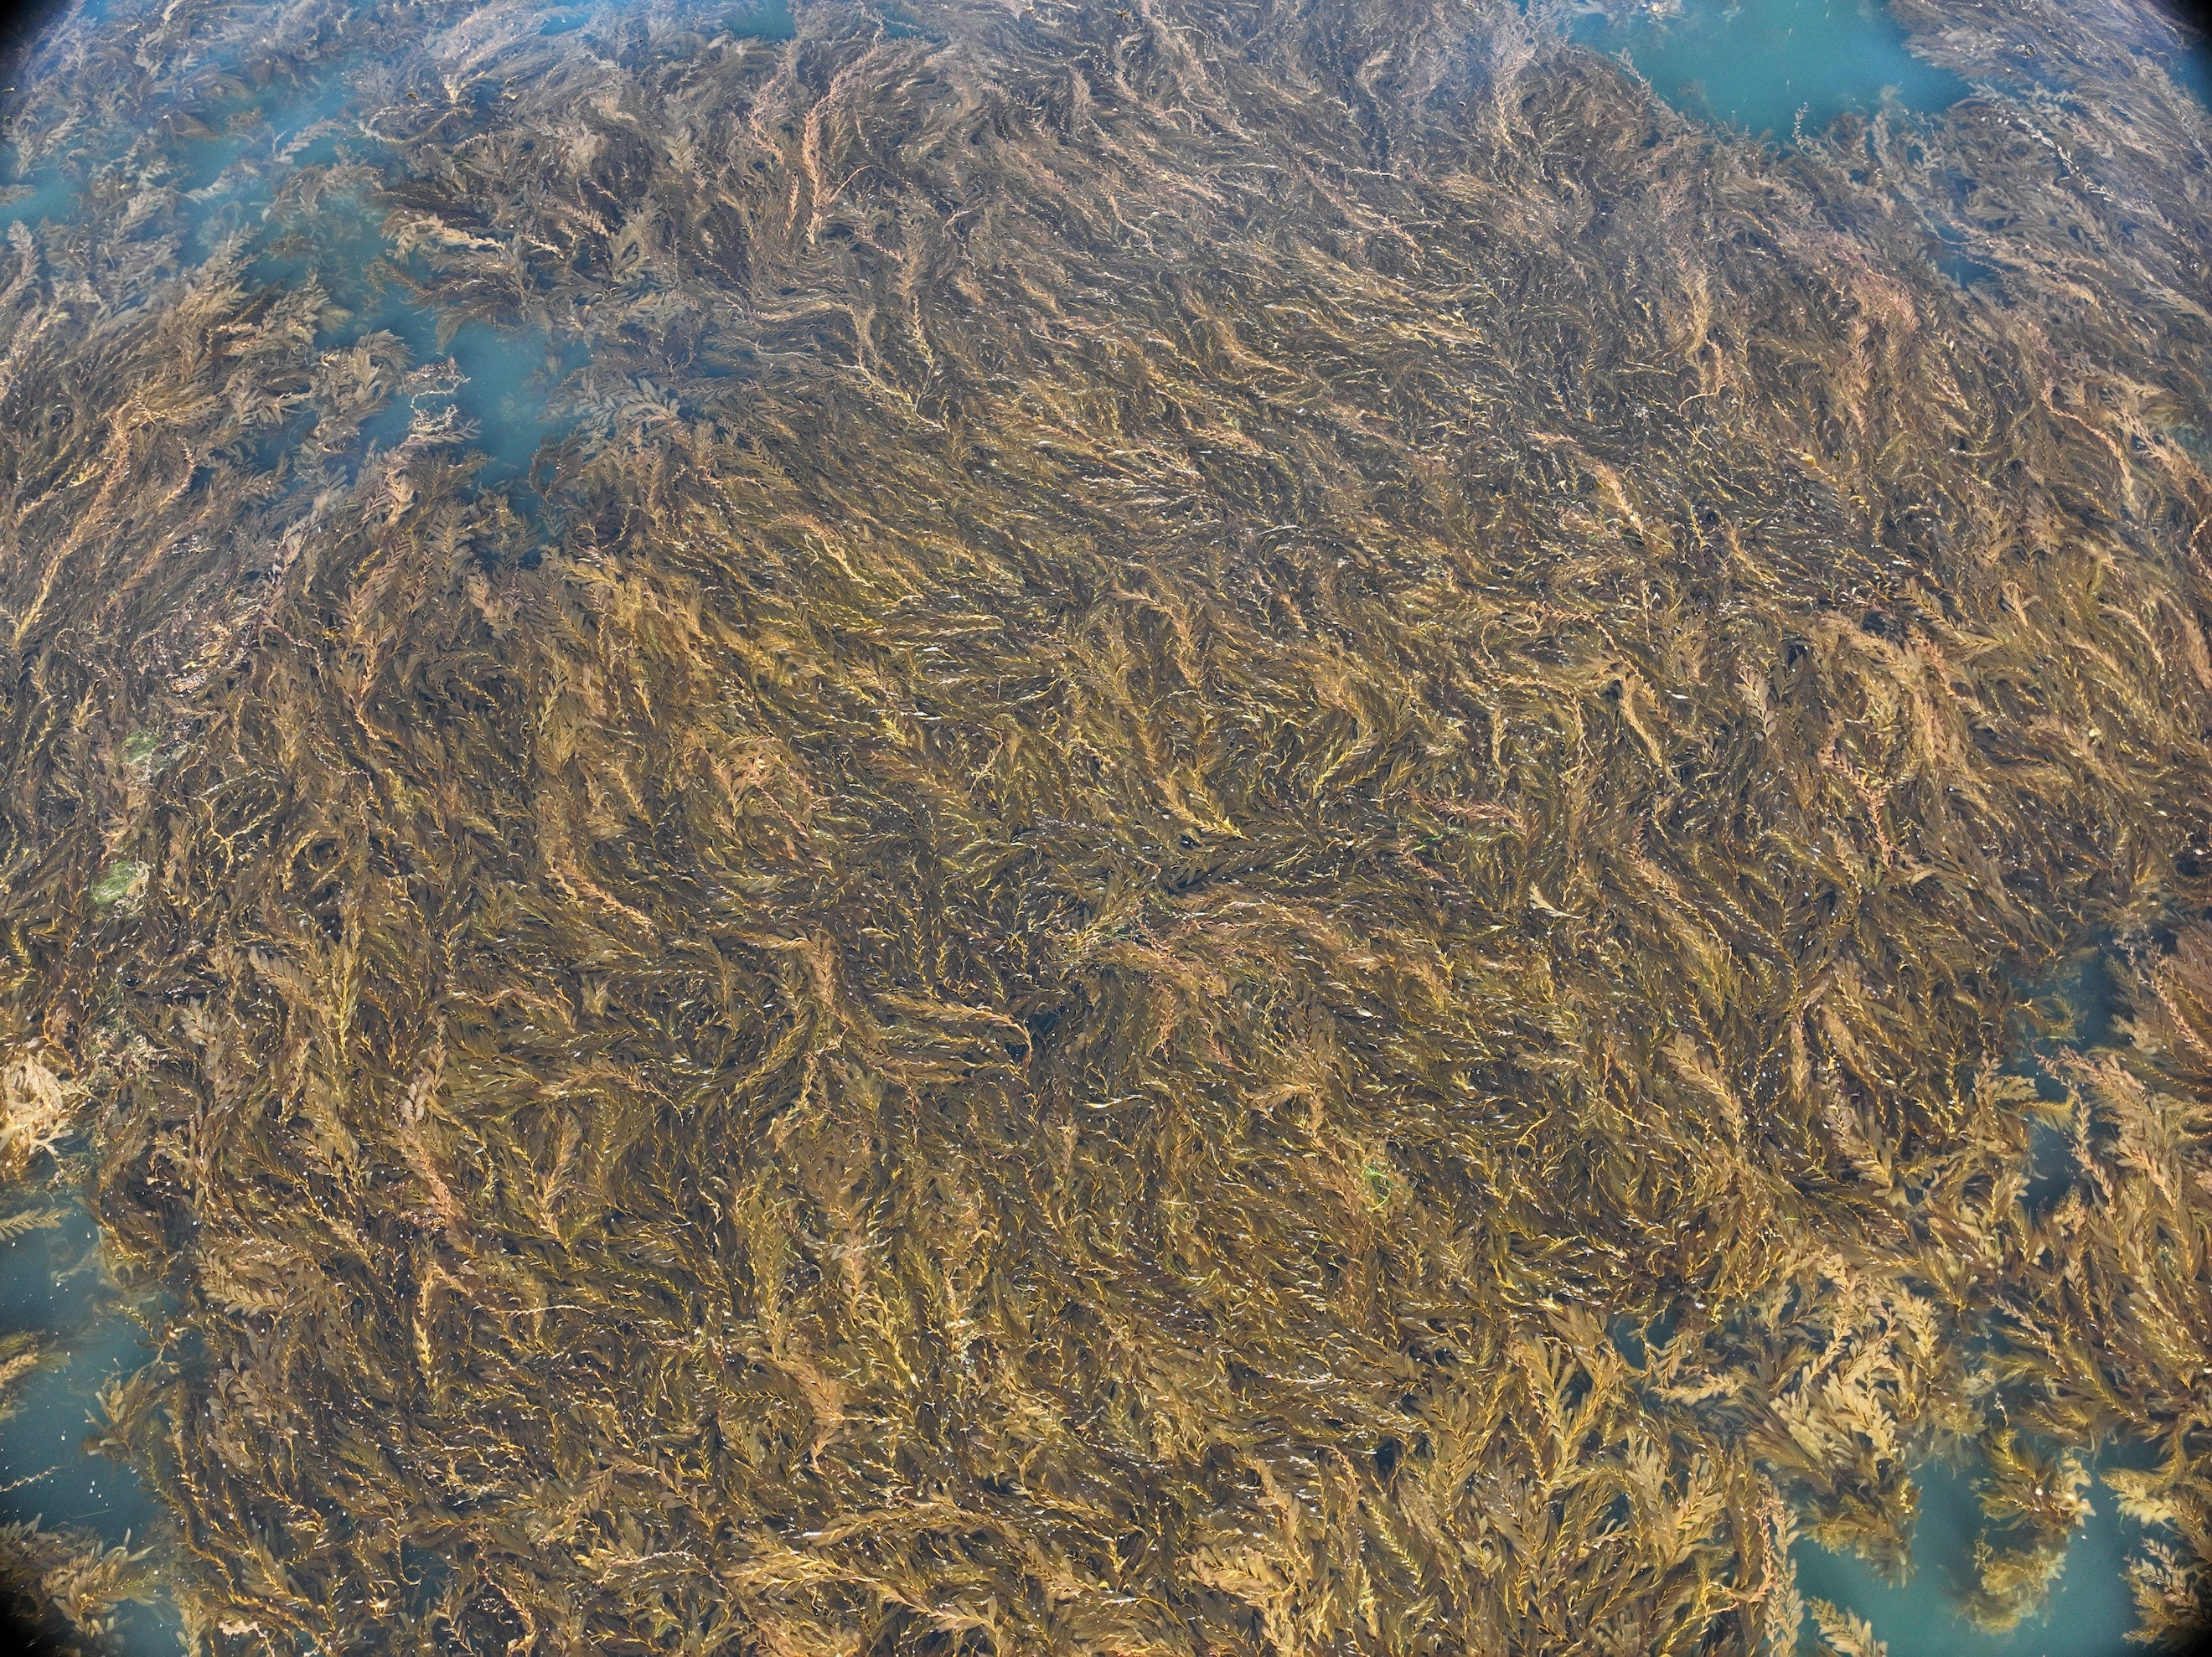 Aerial drone image of kelp in ocean